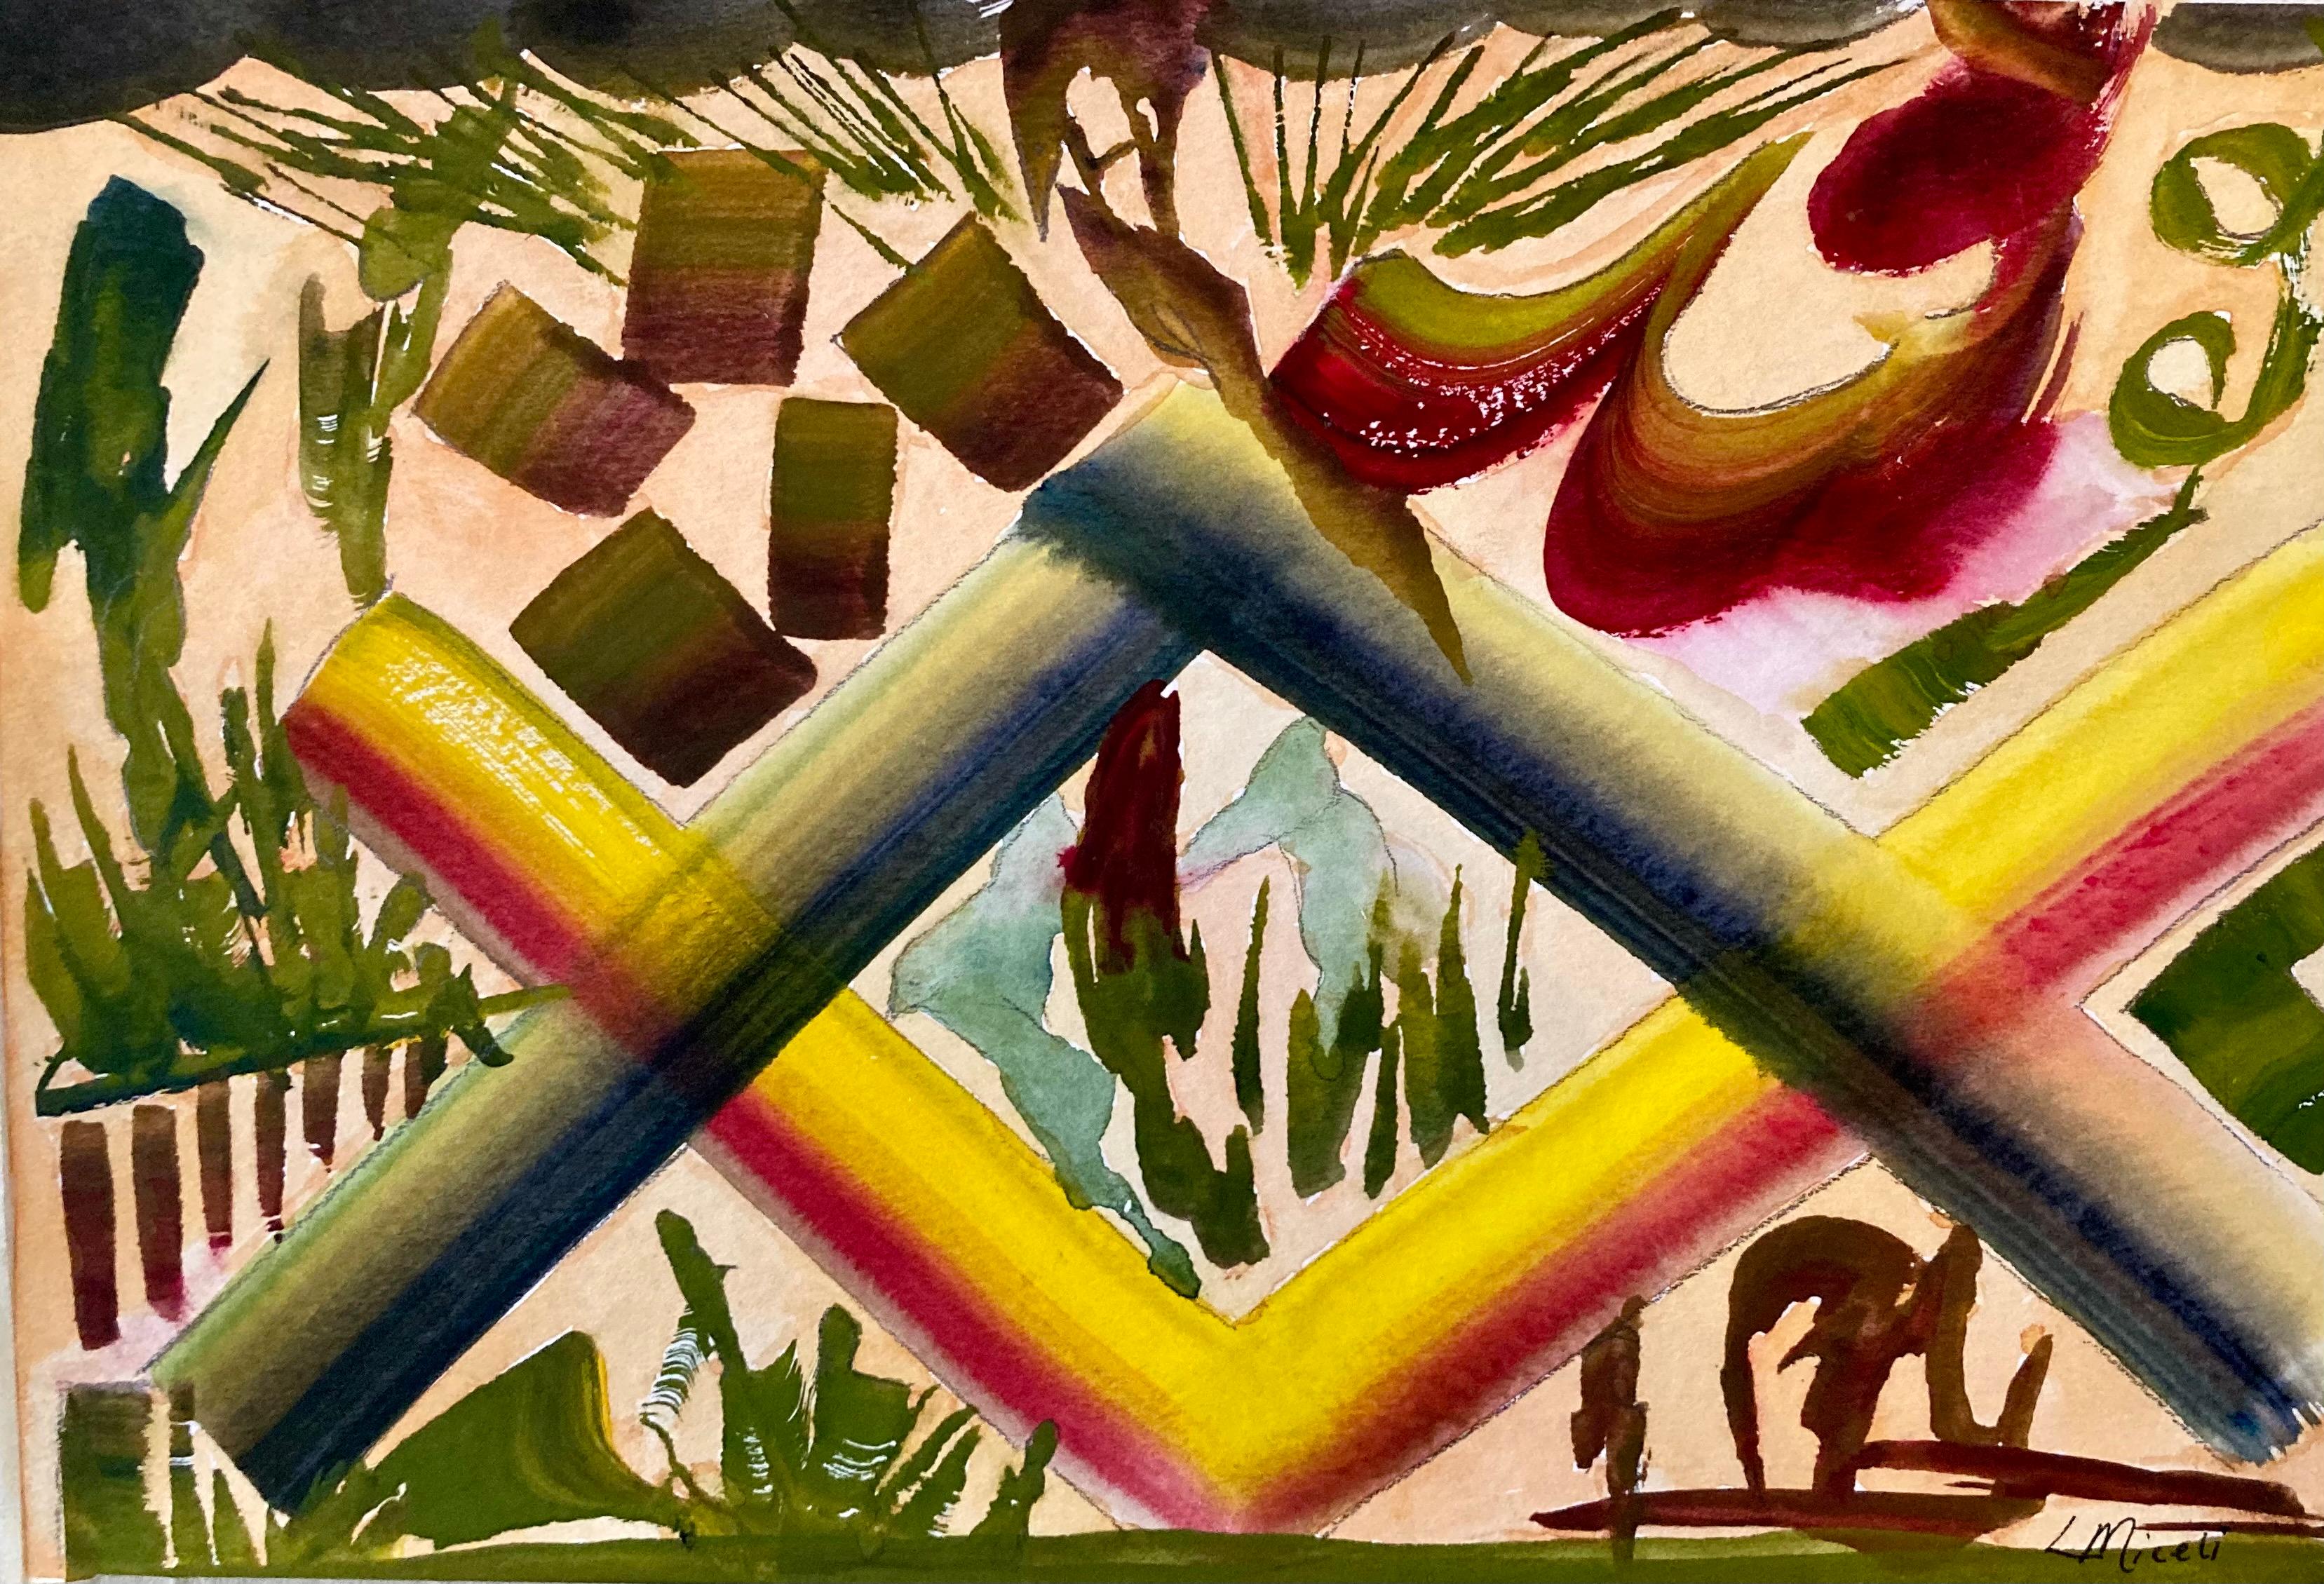 Dieses 10" x 11" große Aquarell auf Papier von Lisa Miceli zeigt eine fantasievolle abstrahierte Landschaft und ist Teil der latticeWorks-Serie. Die Verwendung von Farbe und kompositorischen Elementen in dieser Serie hilft dem Betrachter, im Bild zu